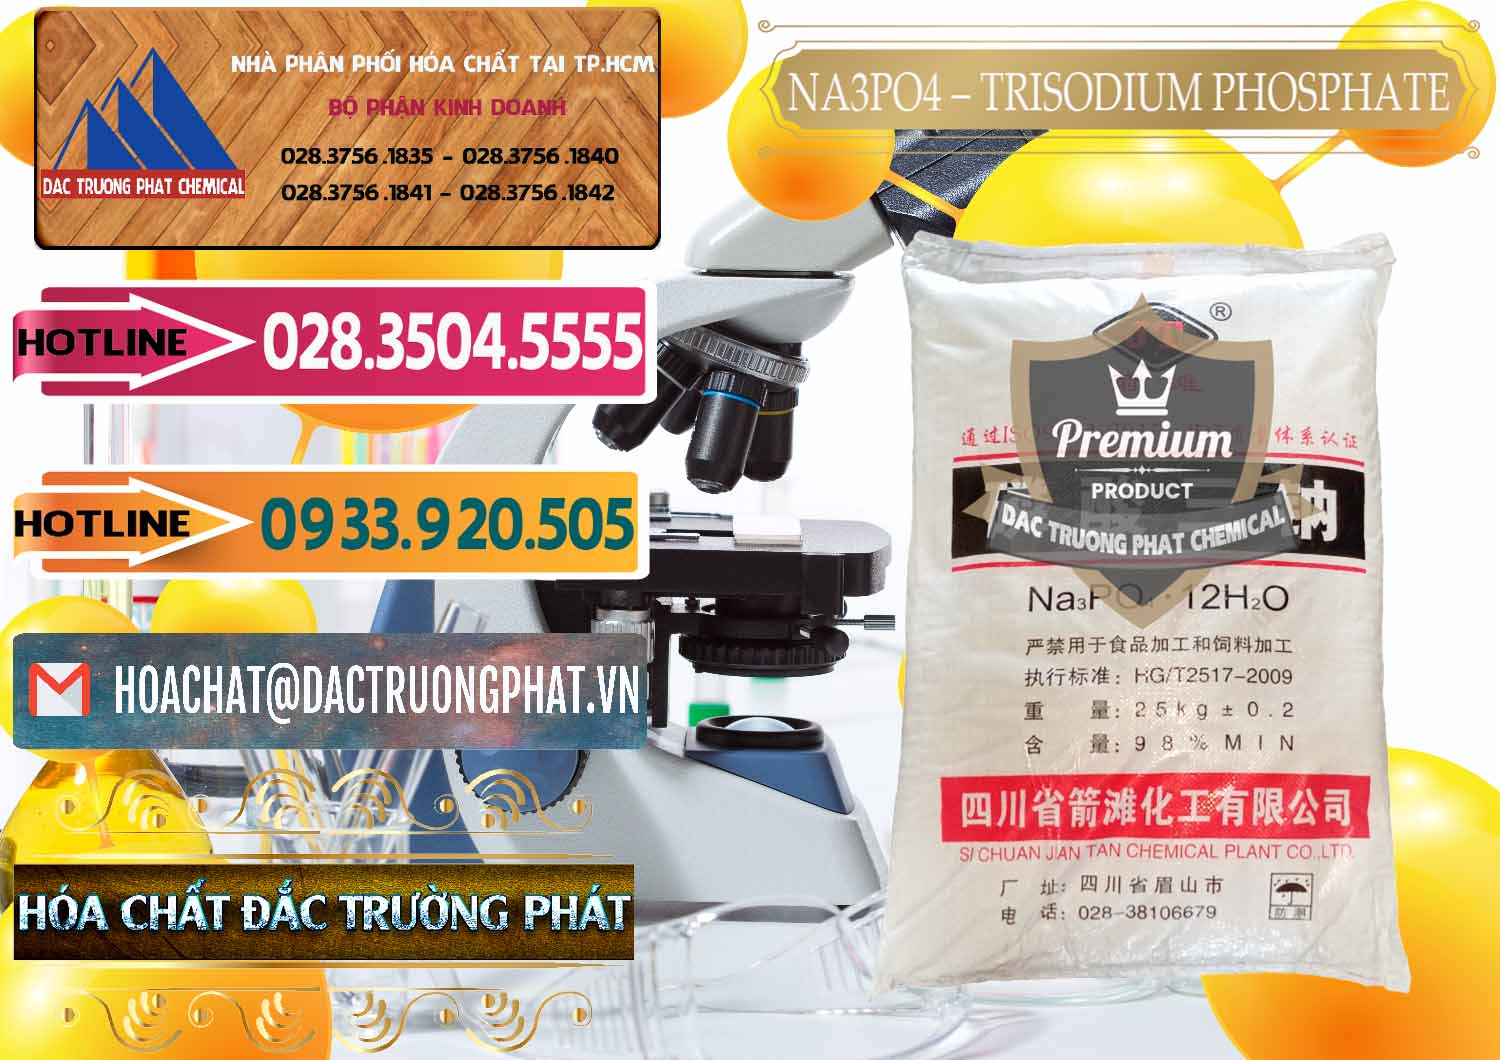 Cty chuyên cung ứng _ bán Na3PO4 – Trisodium Phosphate Trung Quốc China JT - 0102 - Nhà nhập khẩu & phân phối hóa chất tại TP.HCM - dactruongphat.vn